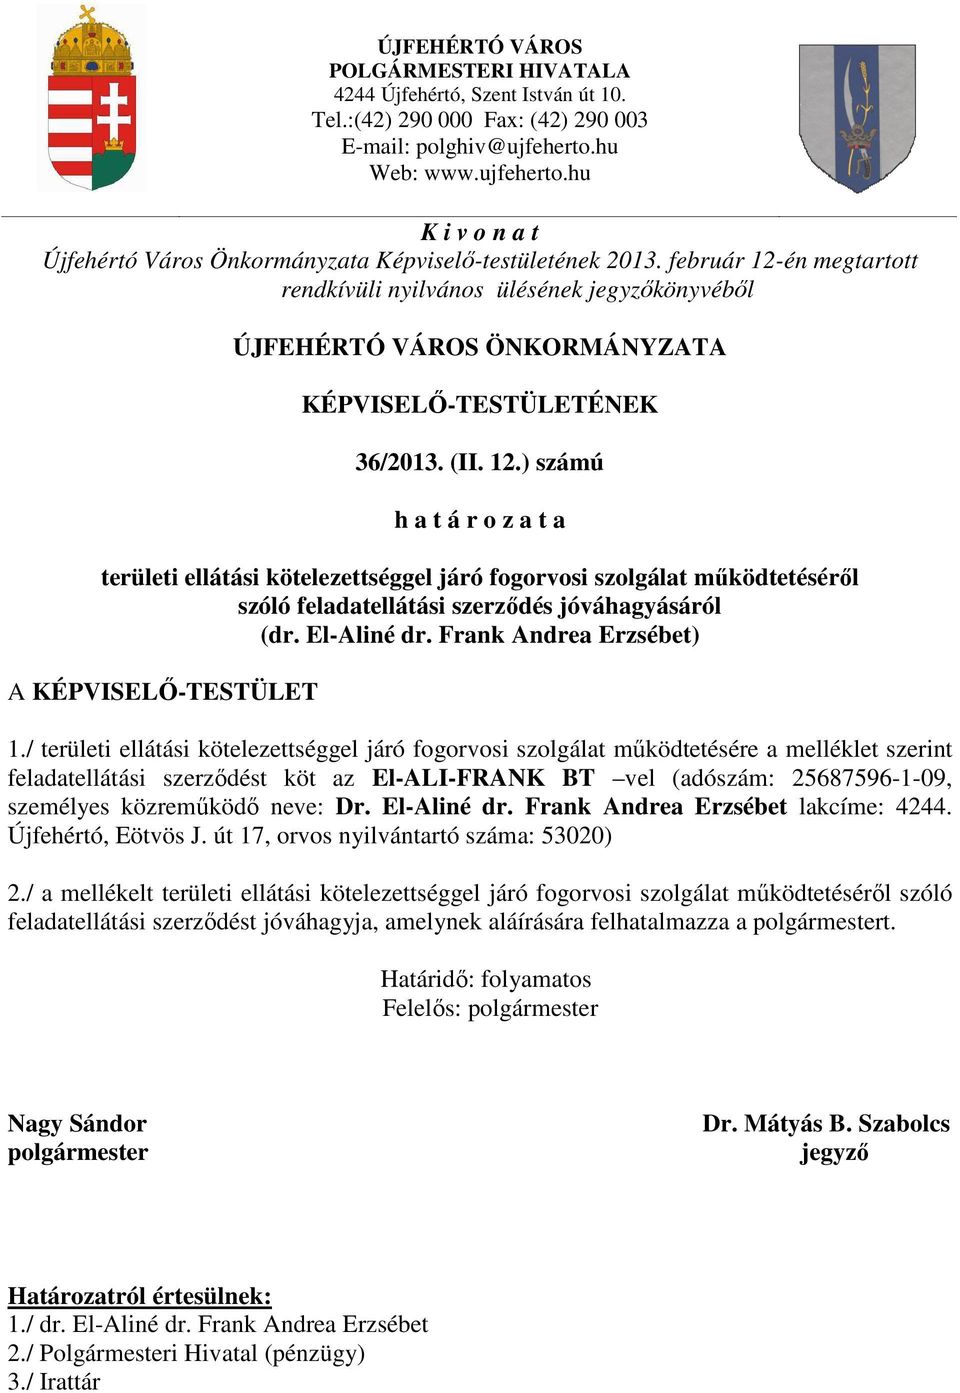 február 12-én megtartott rendkívüli nyilvános ülésének jegyzőkönyvéből ÚJFEHÉRTÓ VÁROS ÖNKORMÁNYZATA KÉPVISELŐ-TESTÜLETÉNEK 36/2013. (II. 12.) számú h a t á r o z a t a területi ellátási kötelezettséggel járó fogorvosi szolgálat működtetéséről szóló feladatellátási szerződés jóváhagyásáról (dr.